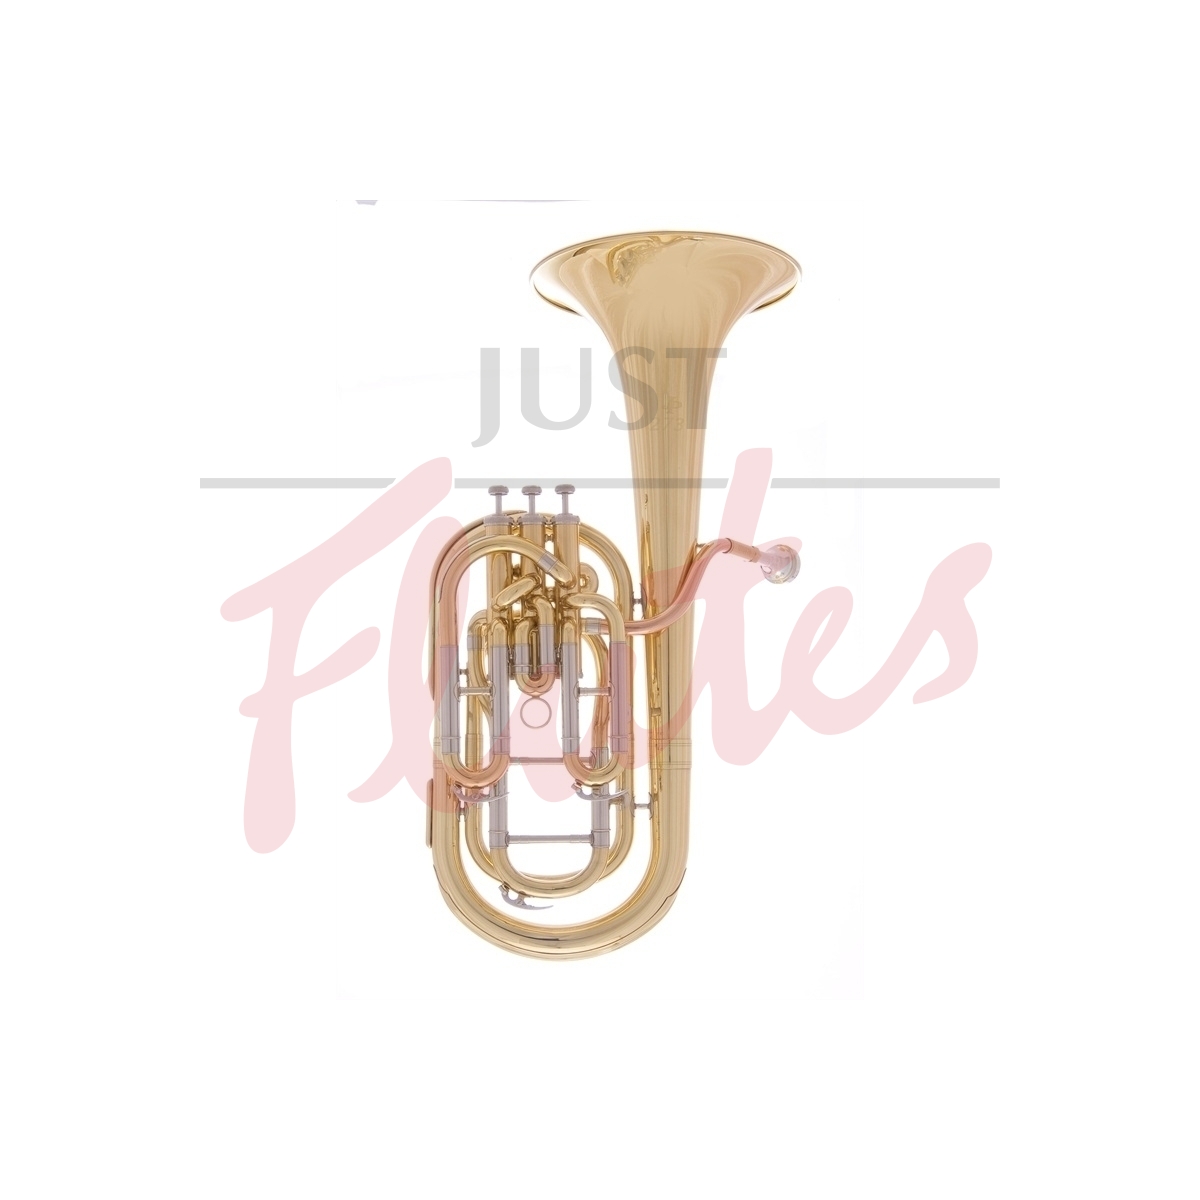 JP273 Baritone Horn